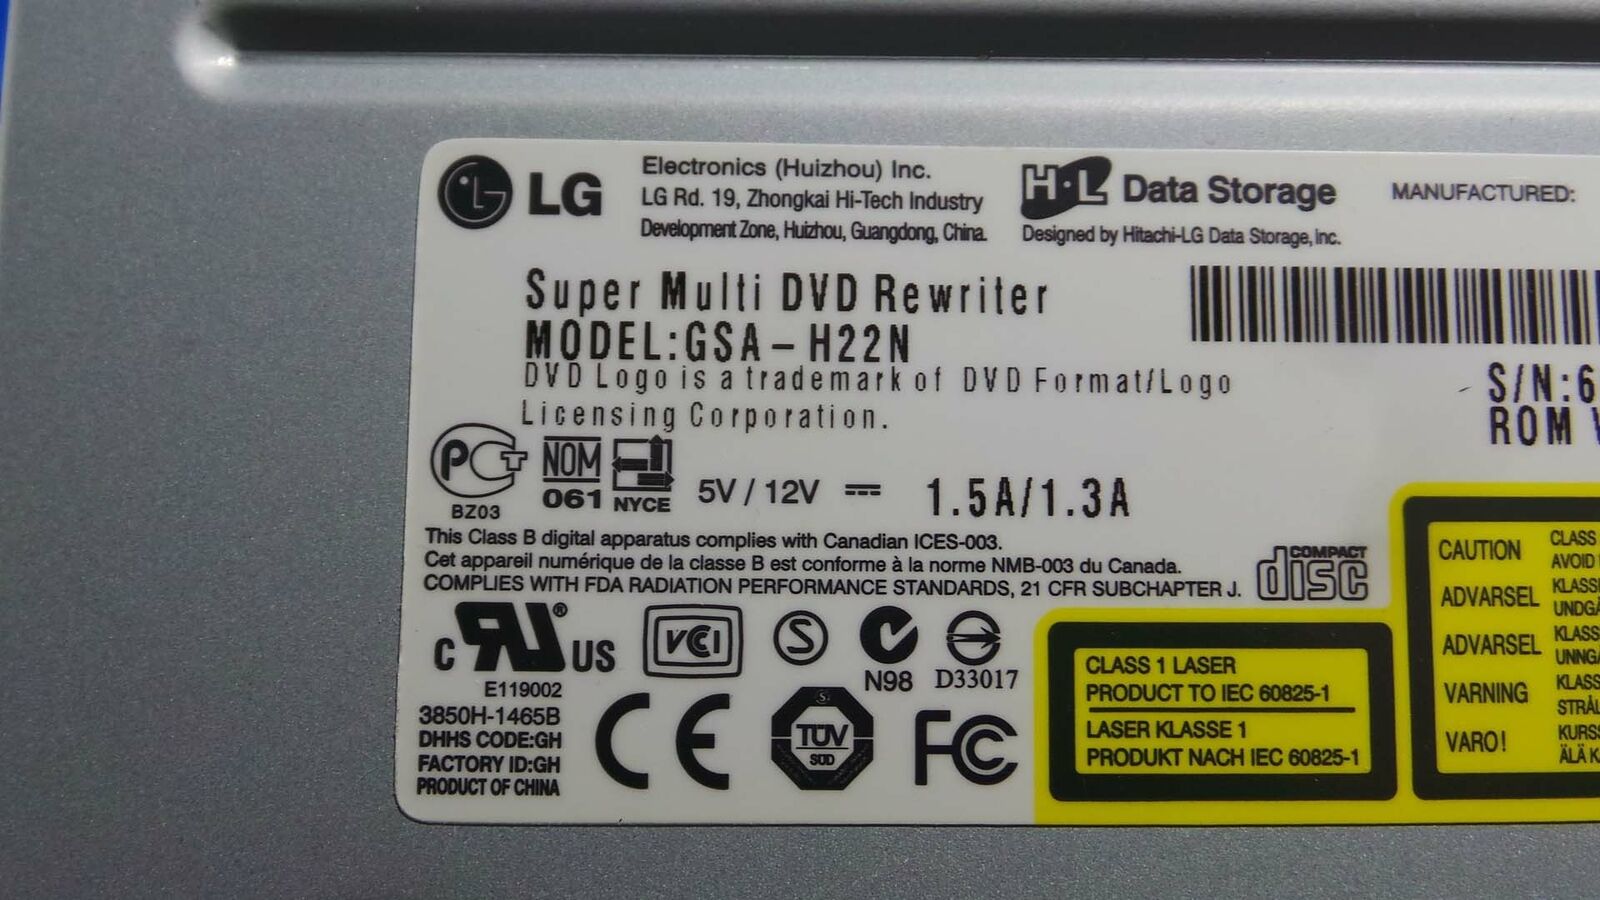 GSA-H22N DVD, GSA-H22N / LG DVD Super Multi DVD Rewriter / 5V~12V / 1.5A~1.3A / Specjalna cena super mile widziane